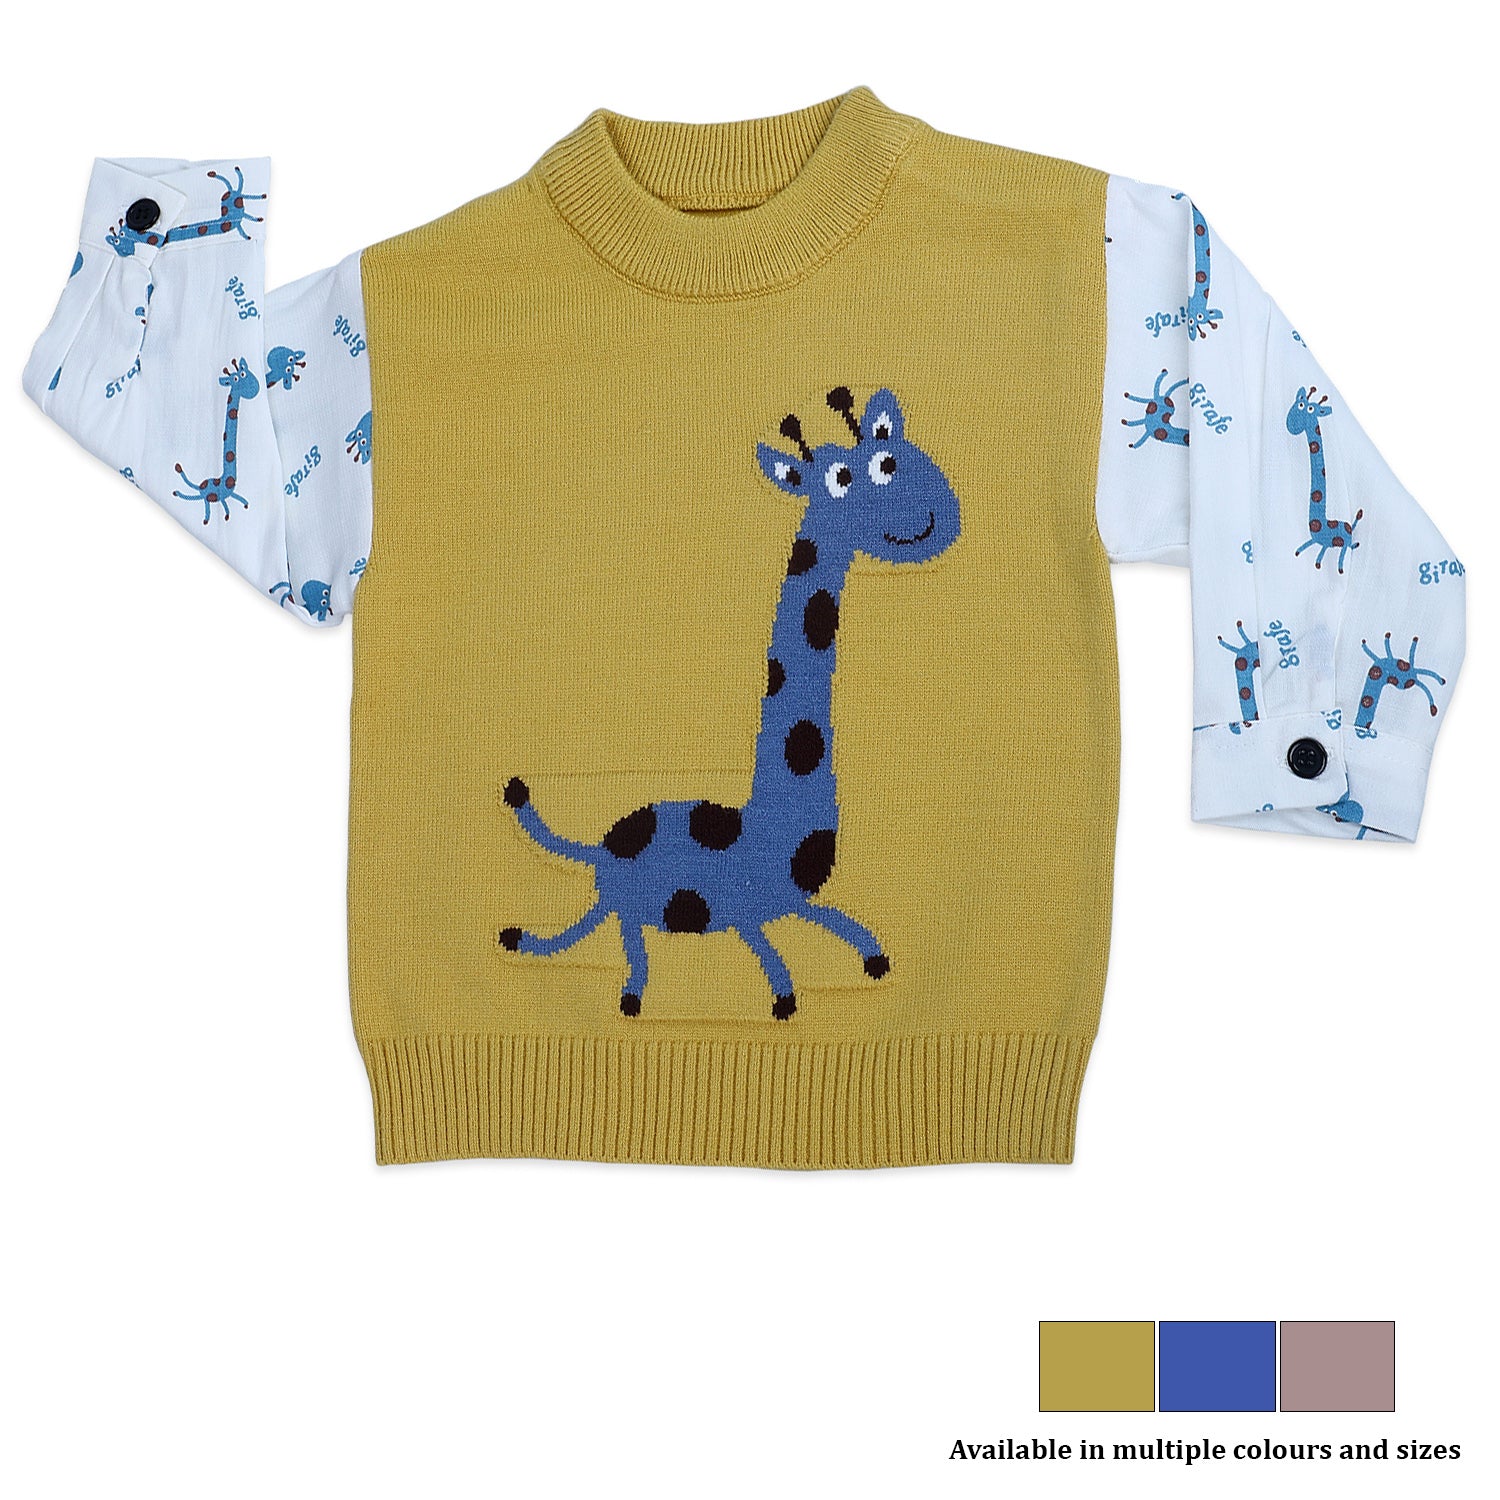 Cute Giraffe Premium Full Sleeves Knitted Sweater - Mustard And White - Baby Moo